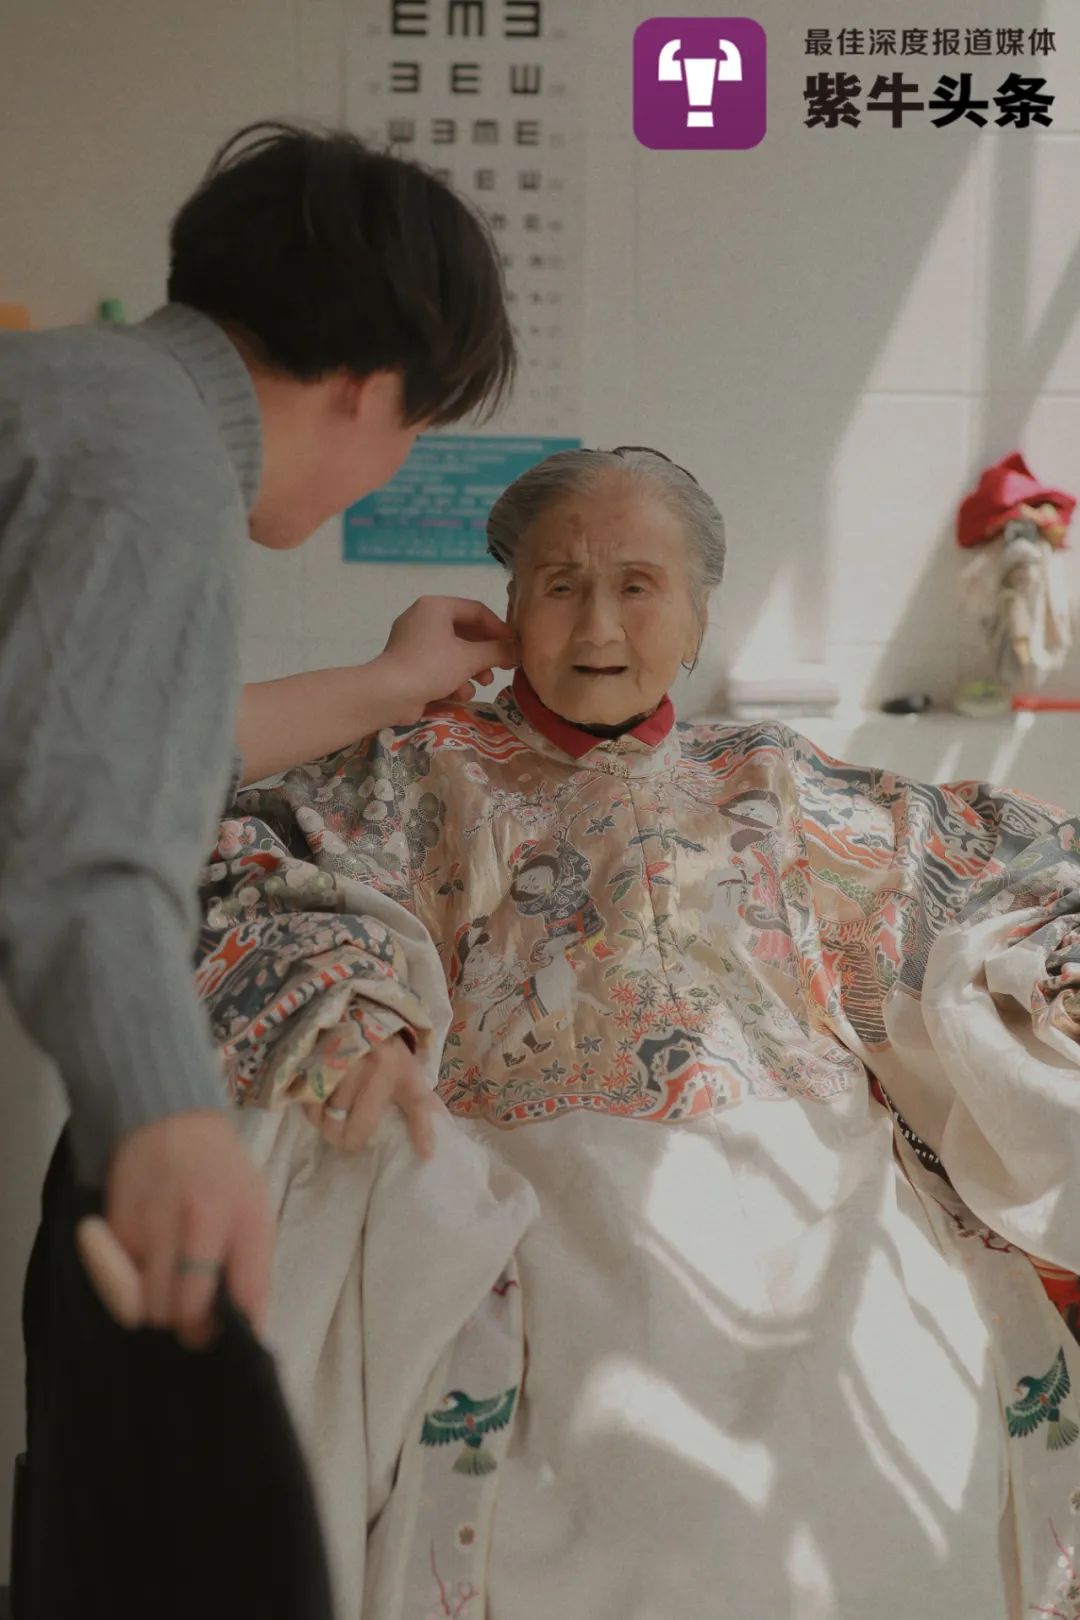 小伙花数万元为94岁曾祖母拍汉服照,老人:结婚都没穿这么漂亮